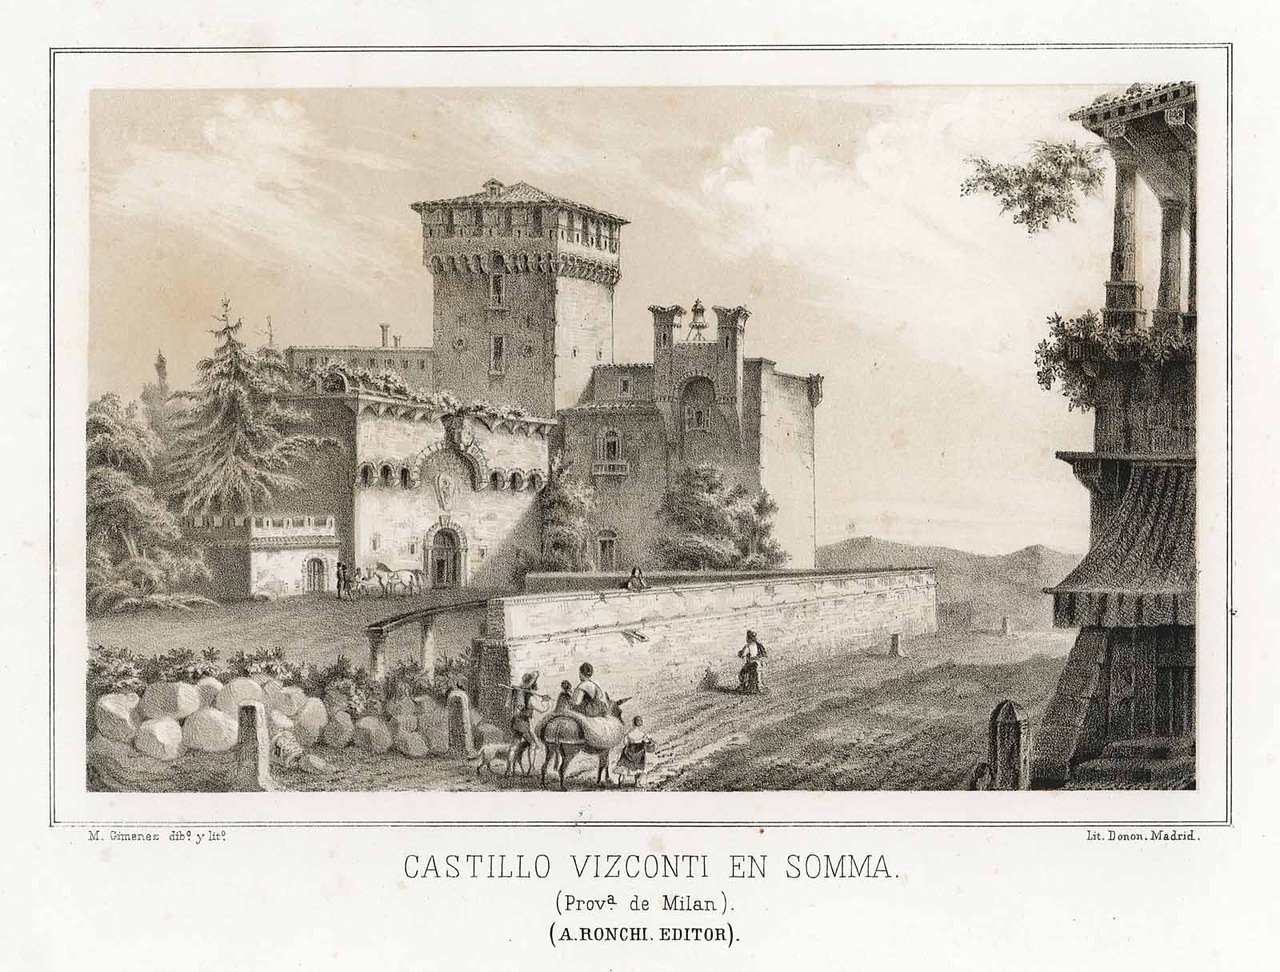 Castillo Vizconti en Somma (Prov.a de Milan)